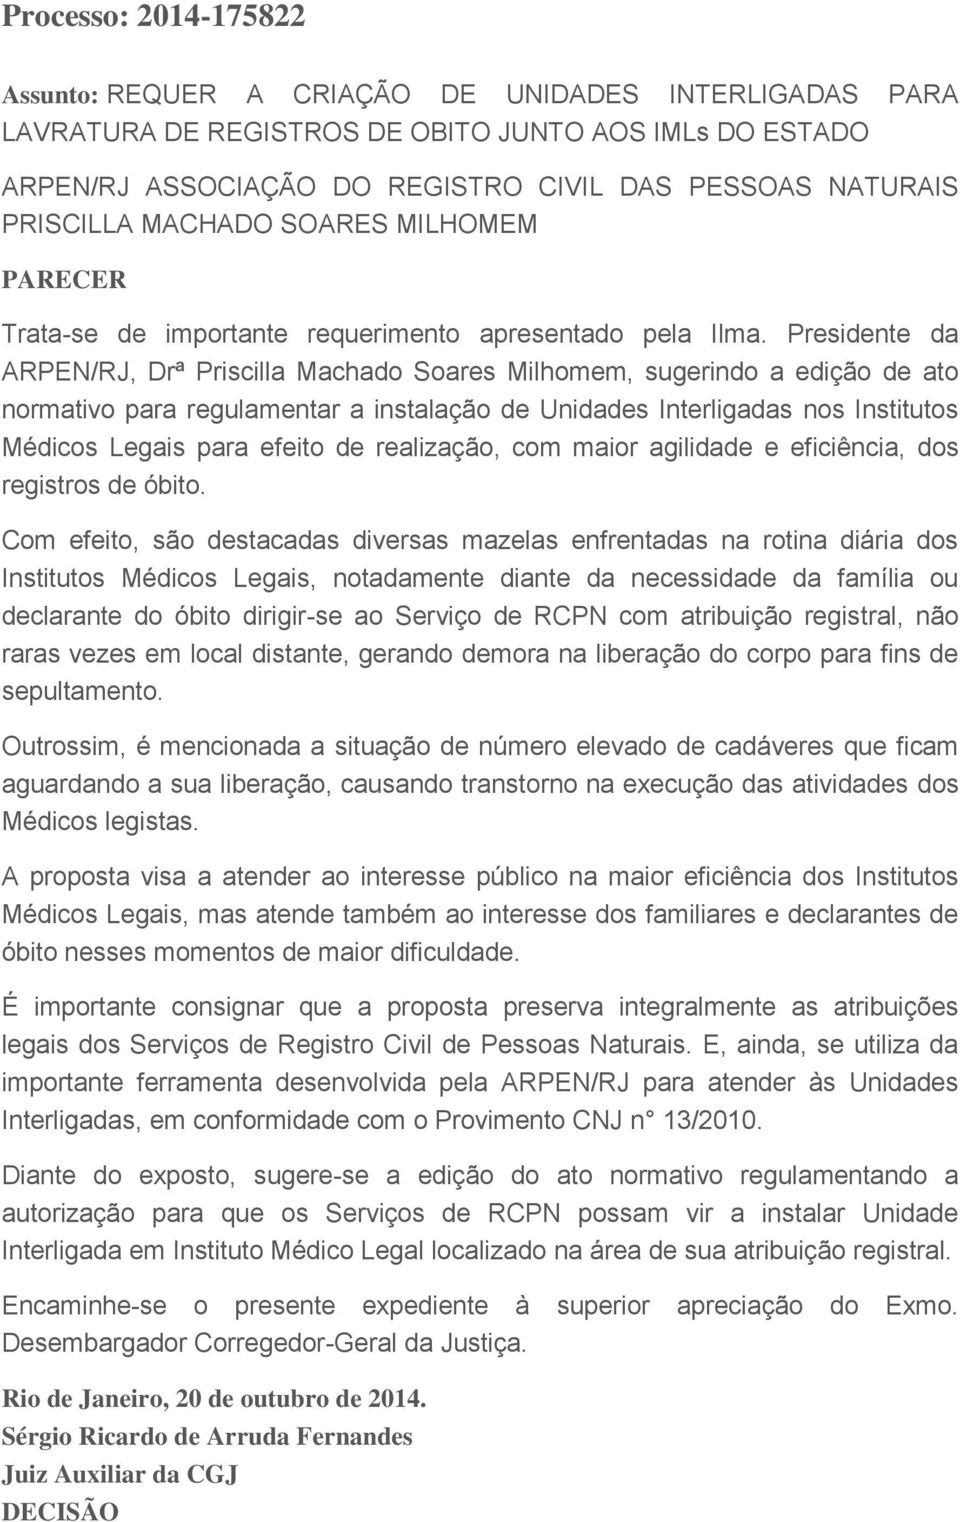 Presidente da ARPEN/RJ, Drª Priscilla Machado Soares Milhomem, sugerindo a edição de ato normativo para regulamentar a instalação de Unidades Interligadas nos Institutos Médicos Legais para efeito de